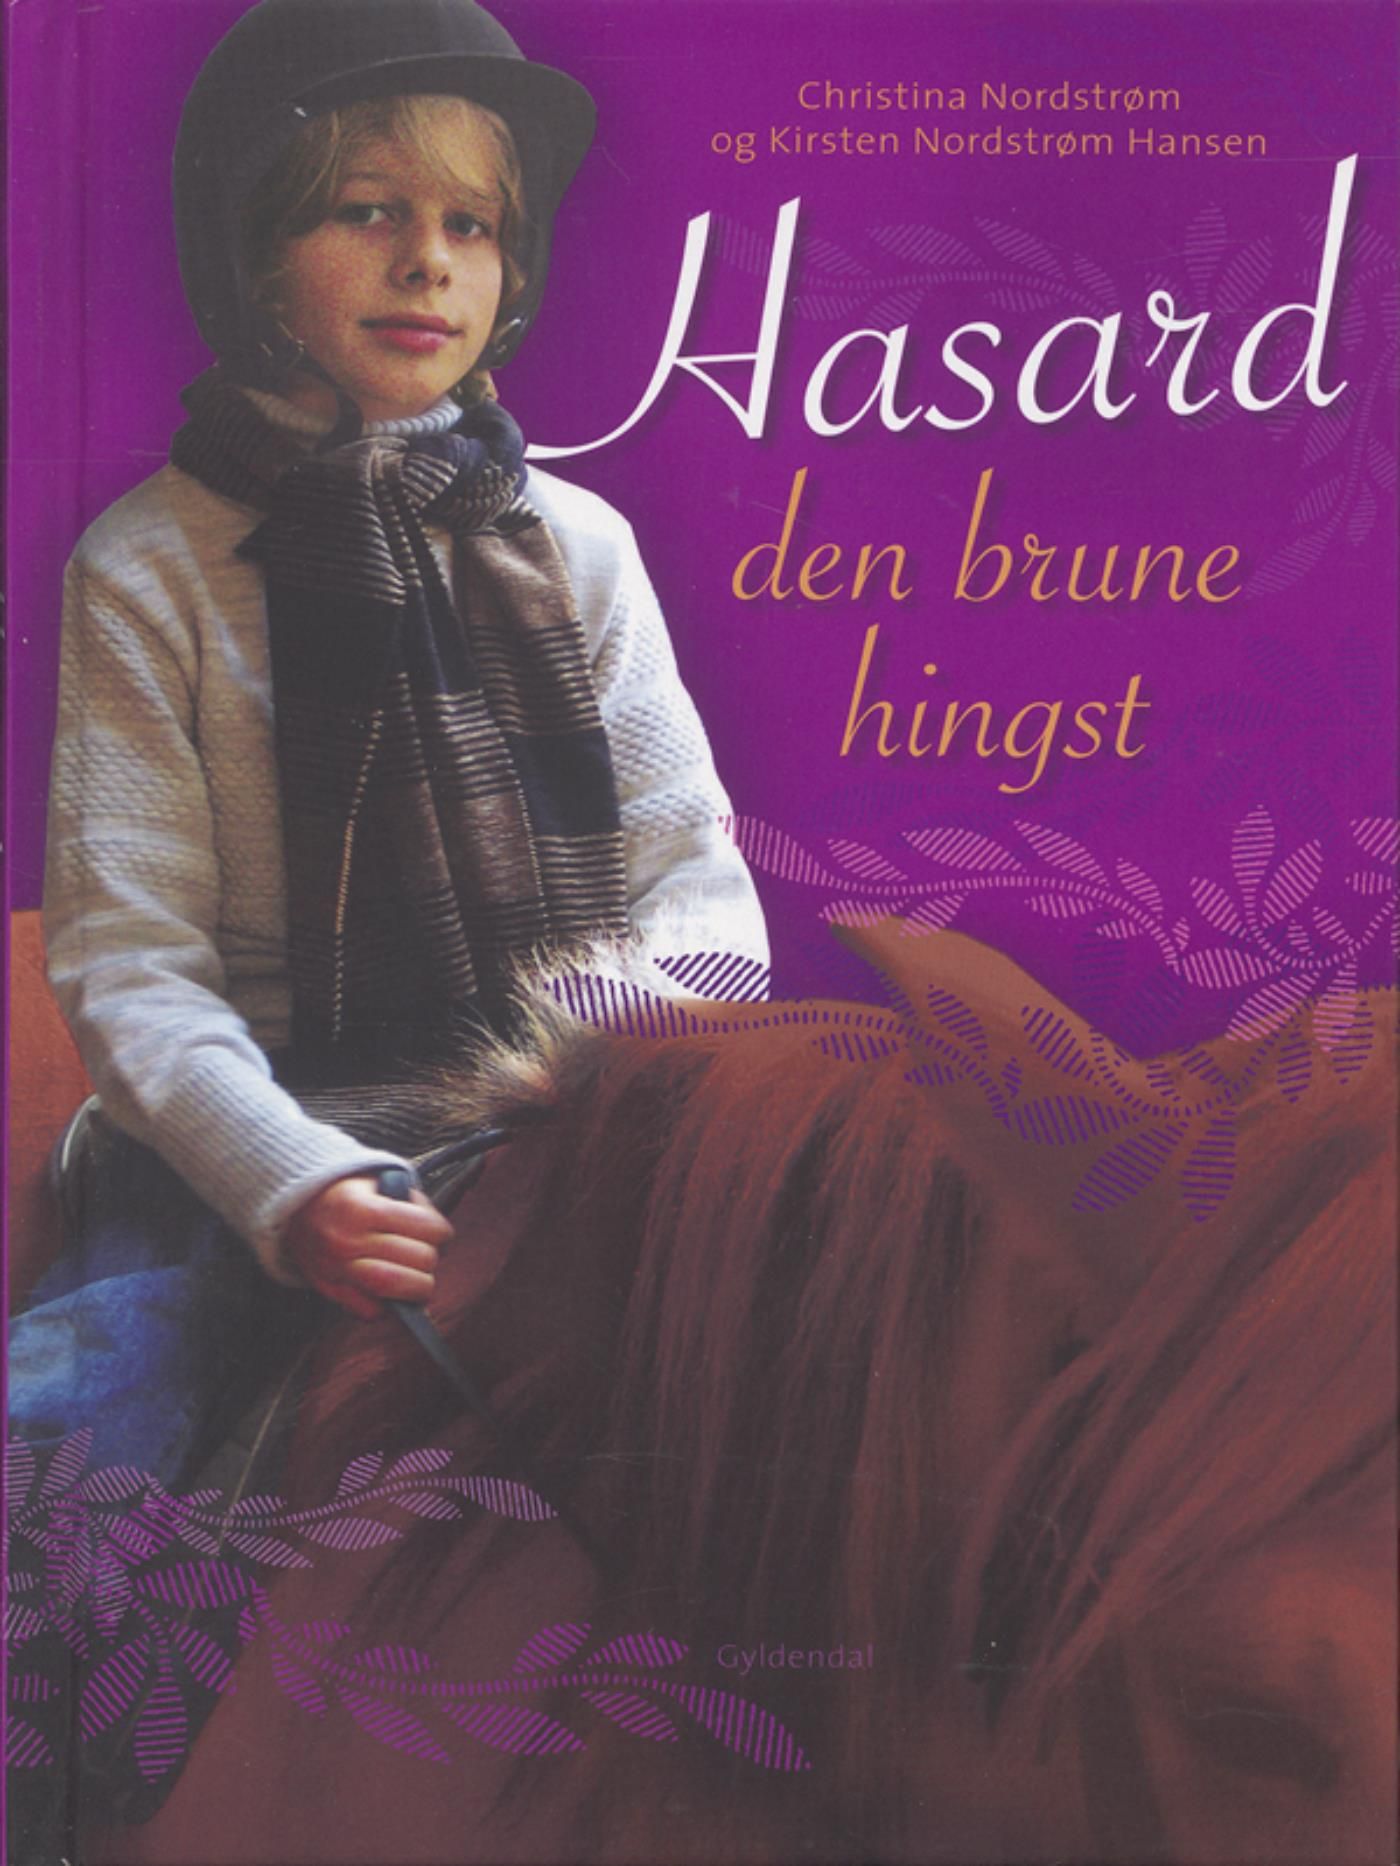 Hasard - den brune hingst, e-bog af Kirsten Nordstrøm Hansen, Christina Nordstrøm